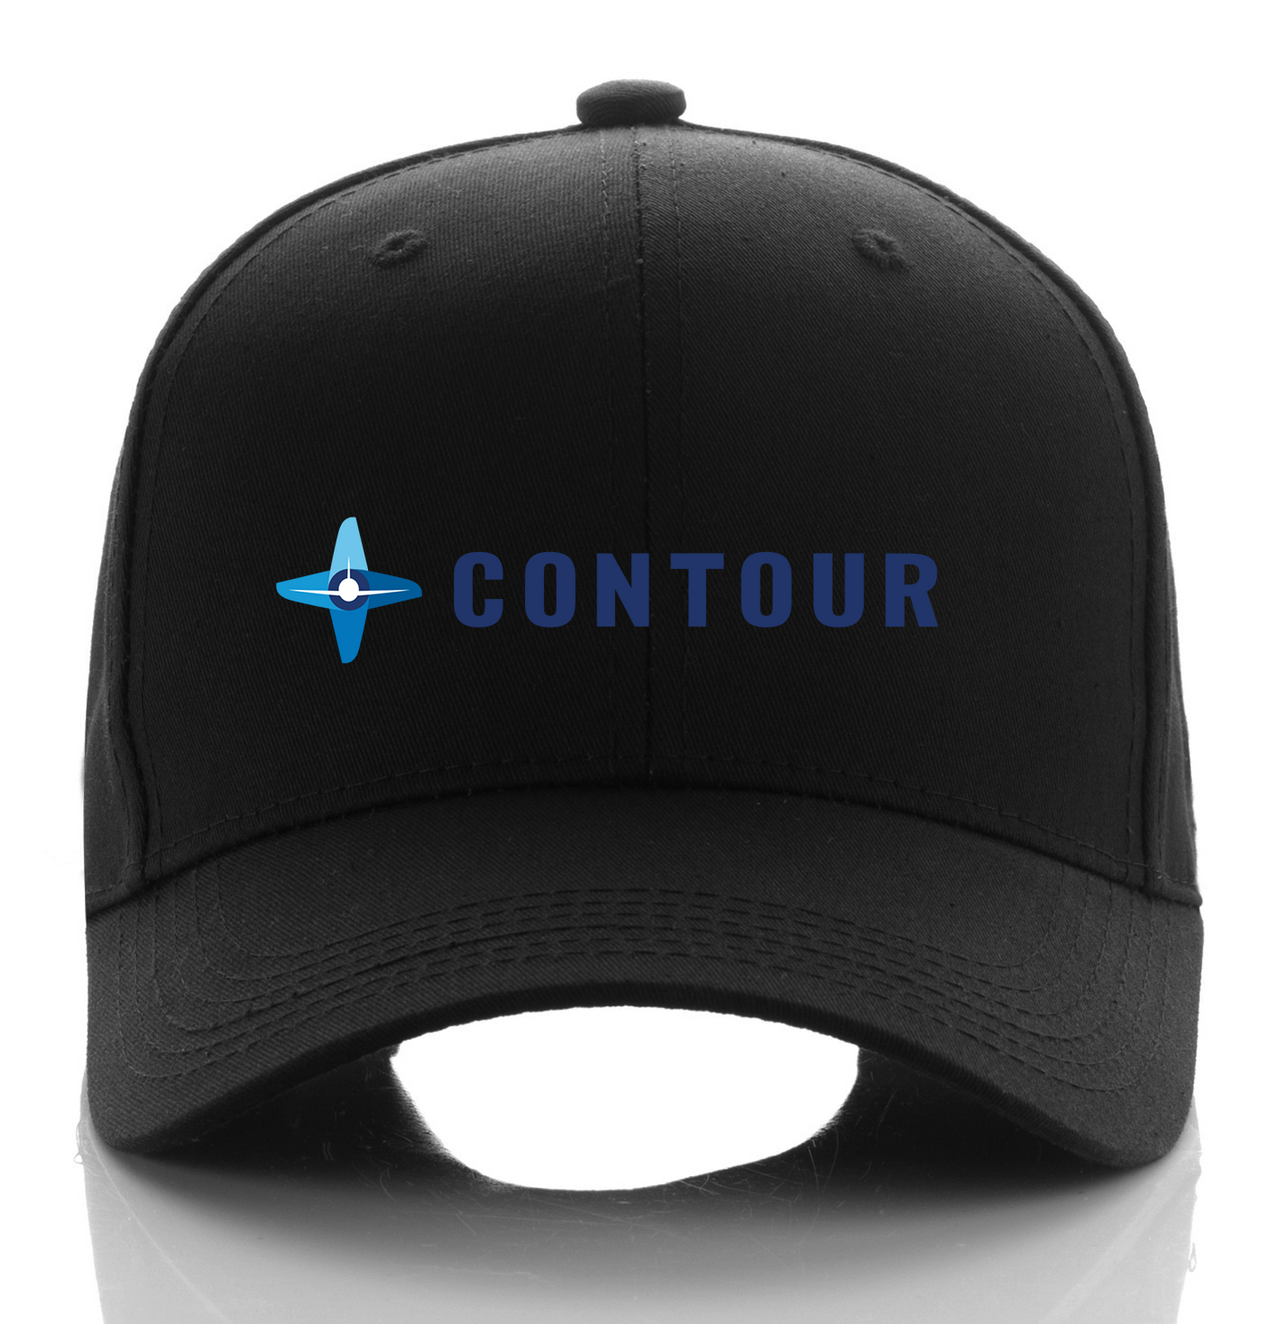 CONTOUR AIRLINE DESIGNED CAP